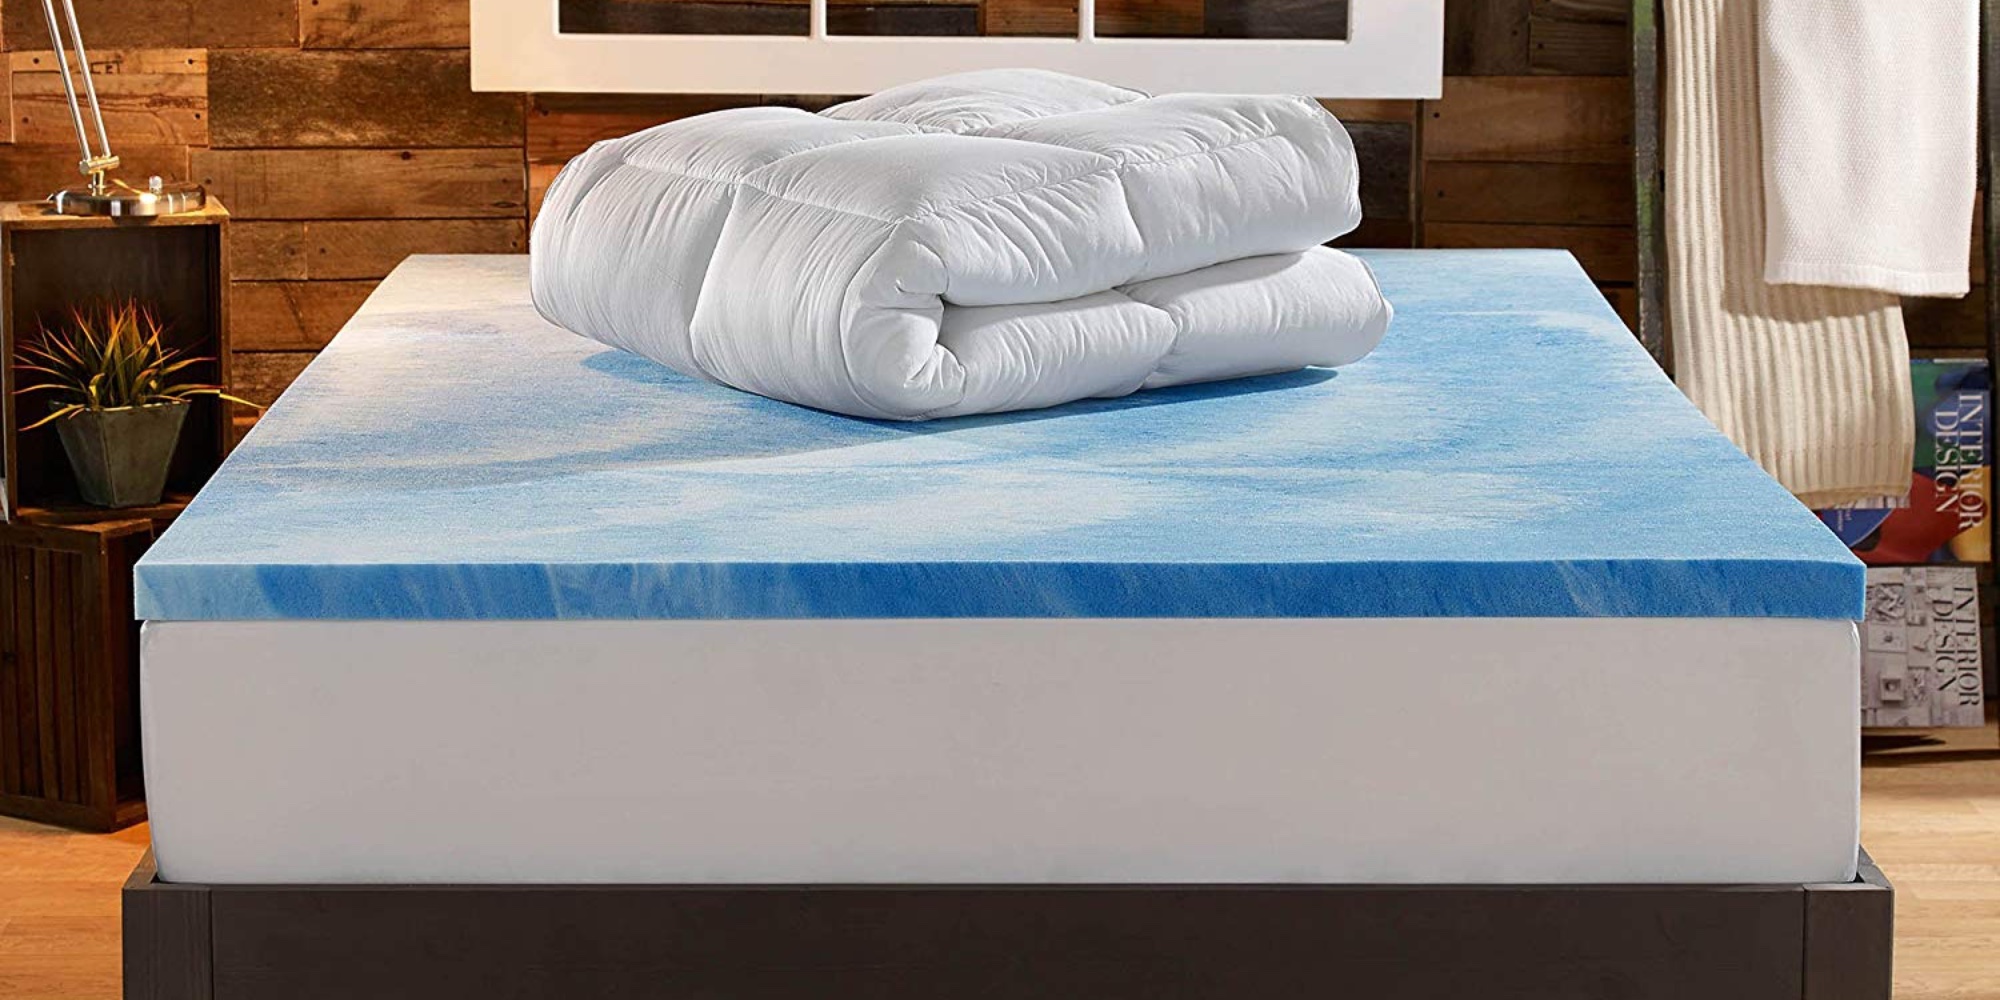 5 sleep innovations mattress tpper